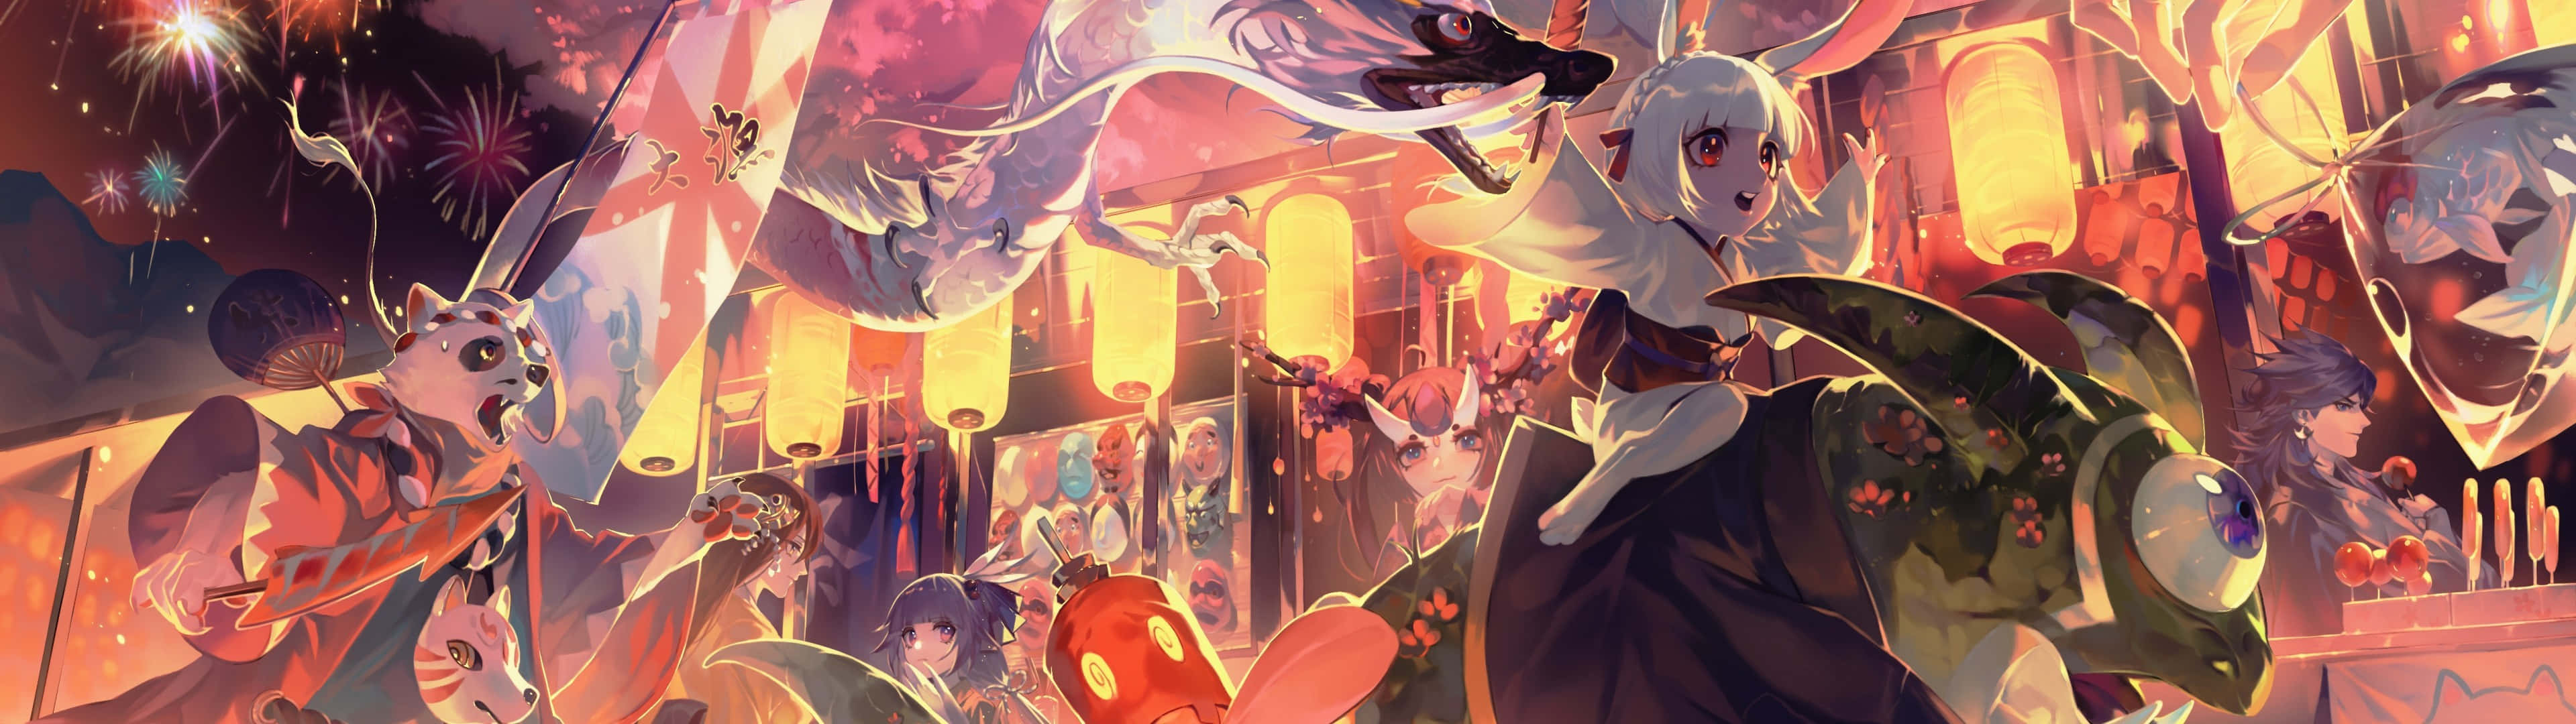 Det smukkeste animekunstværk i HD Wallpaper